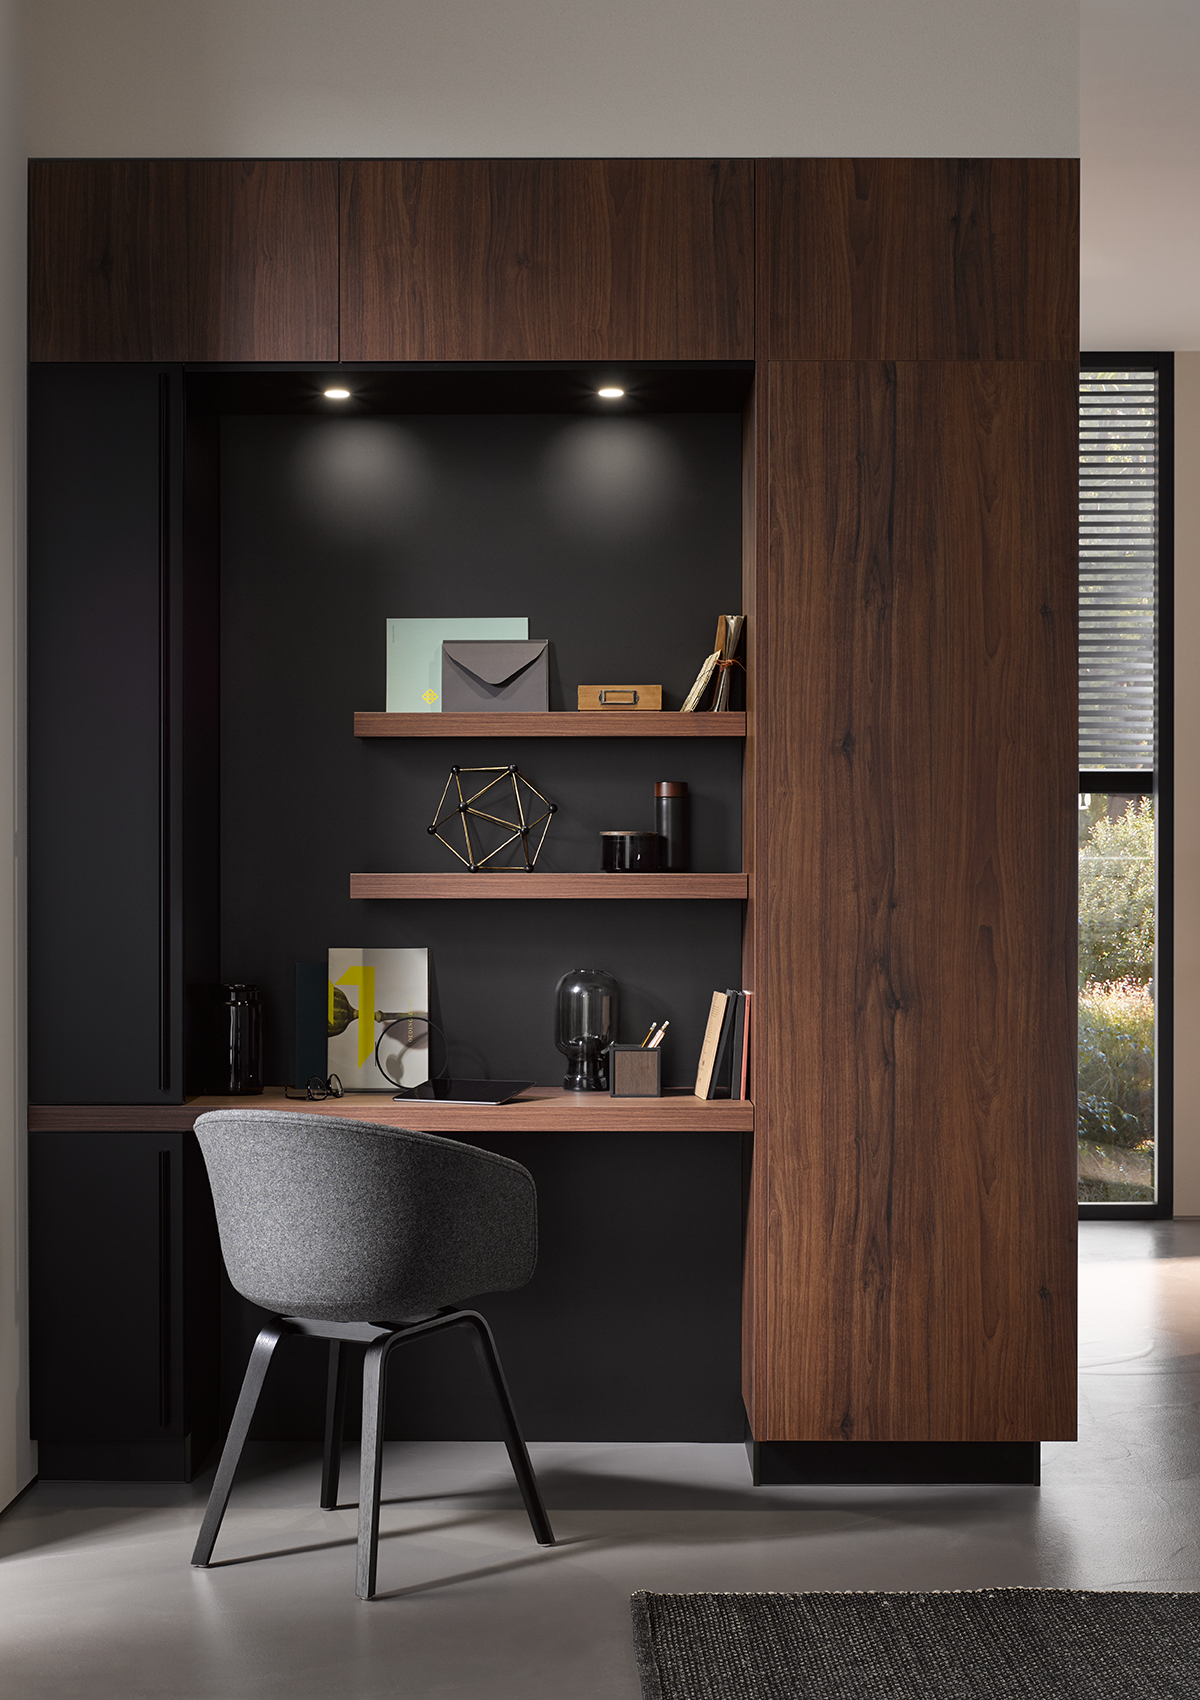 Cubículo despacho con pared del fondo negra, tablero de nogal, así como estantes a juego y focos integrados.